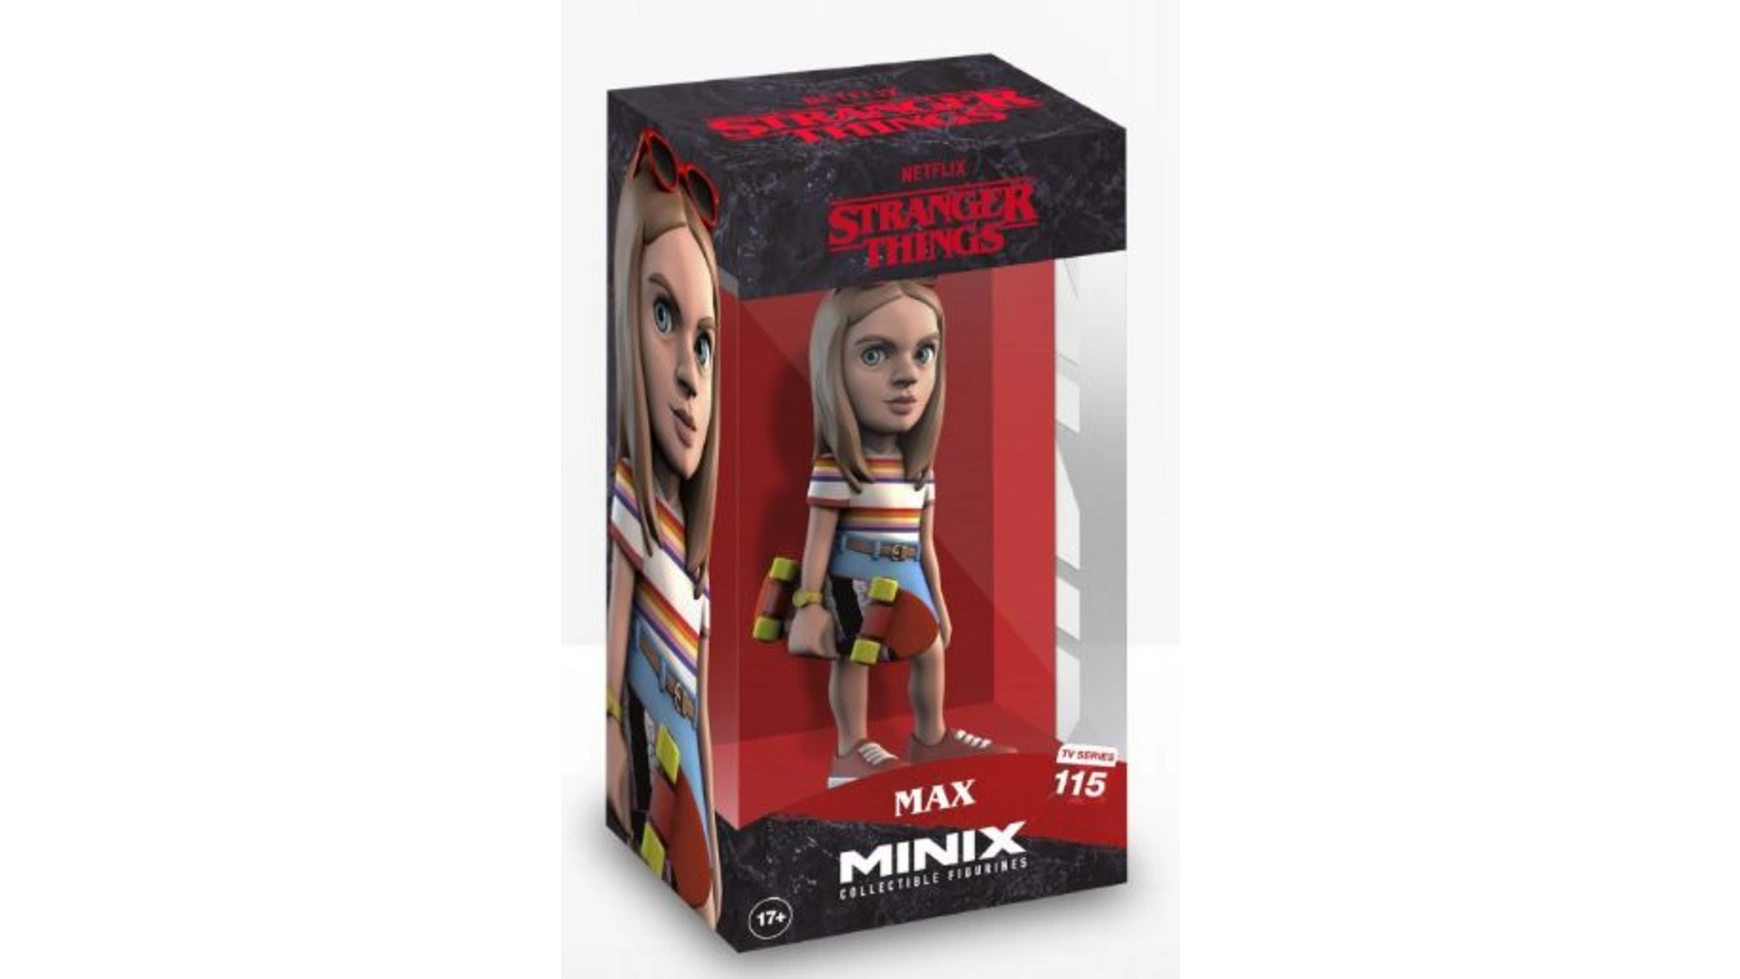 Minix Stranger Things Макс фигурка 12 см цена и фото